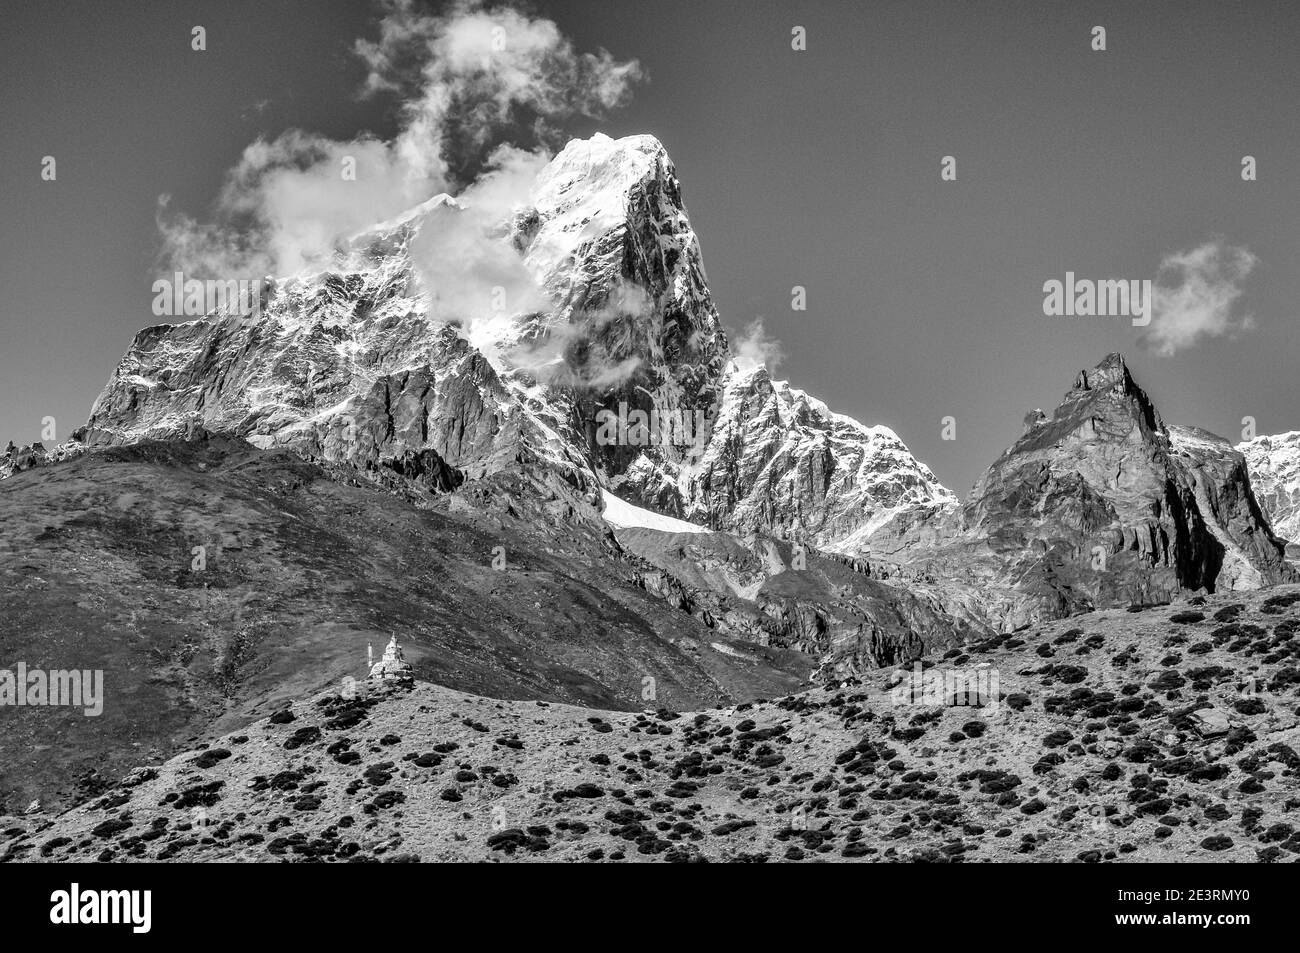 Népal. Montagnes de l'Himalaya en monochrome dans le parc national de Sagarmatha de la vallée de Solu Khumbu du Mont Everest au Népal, avec le modeste sommet de Taweche vu ici de dessus Peiche en route vers le camp de base d'alpinisme Everest. Banque D'Images